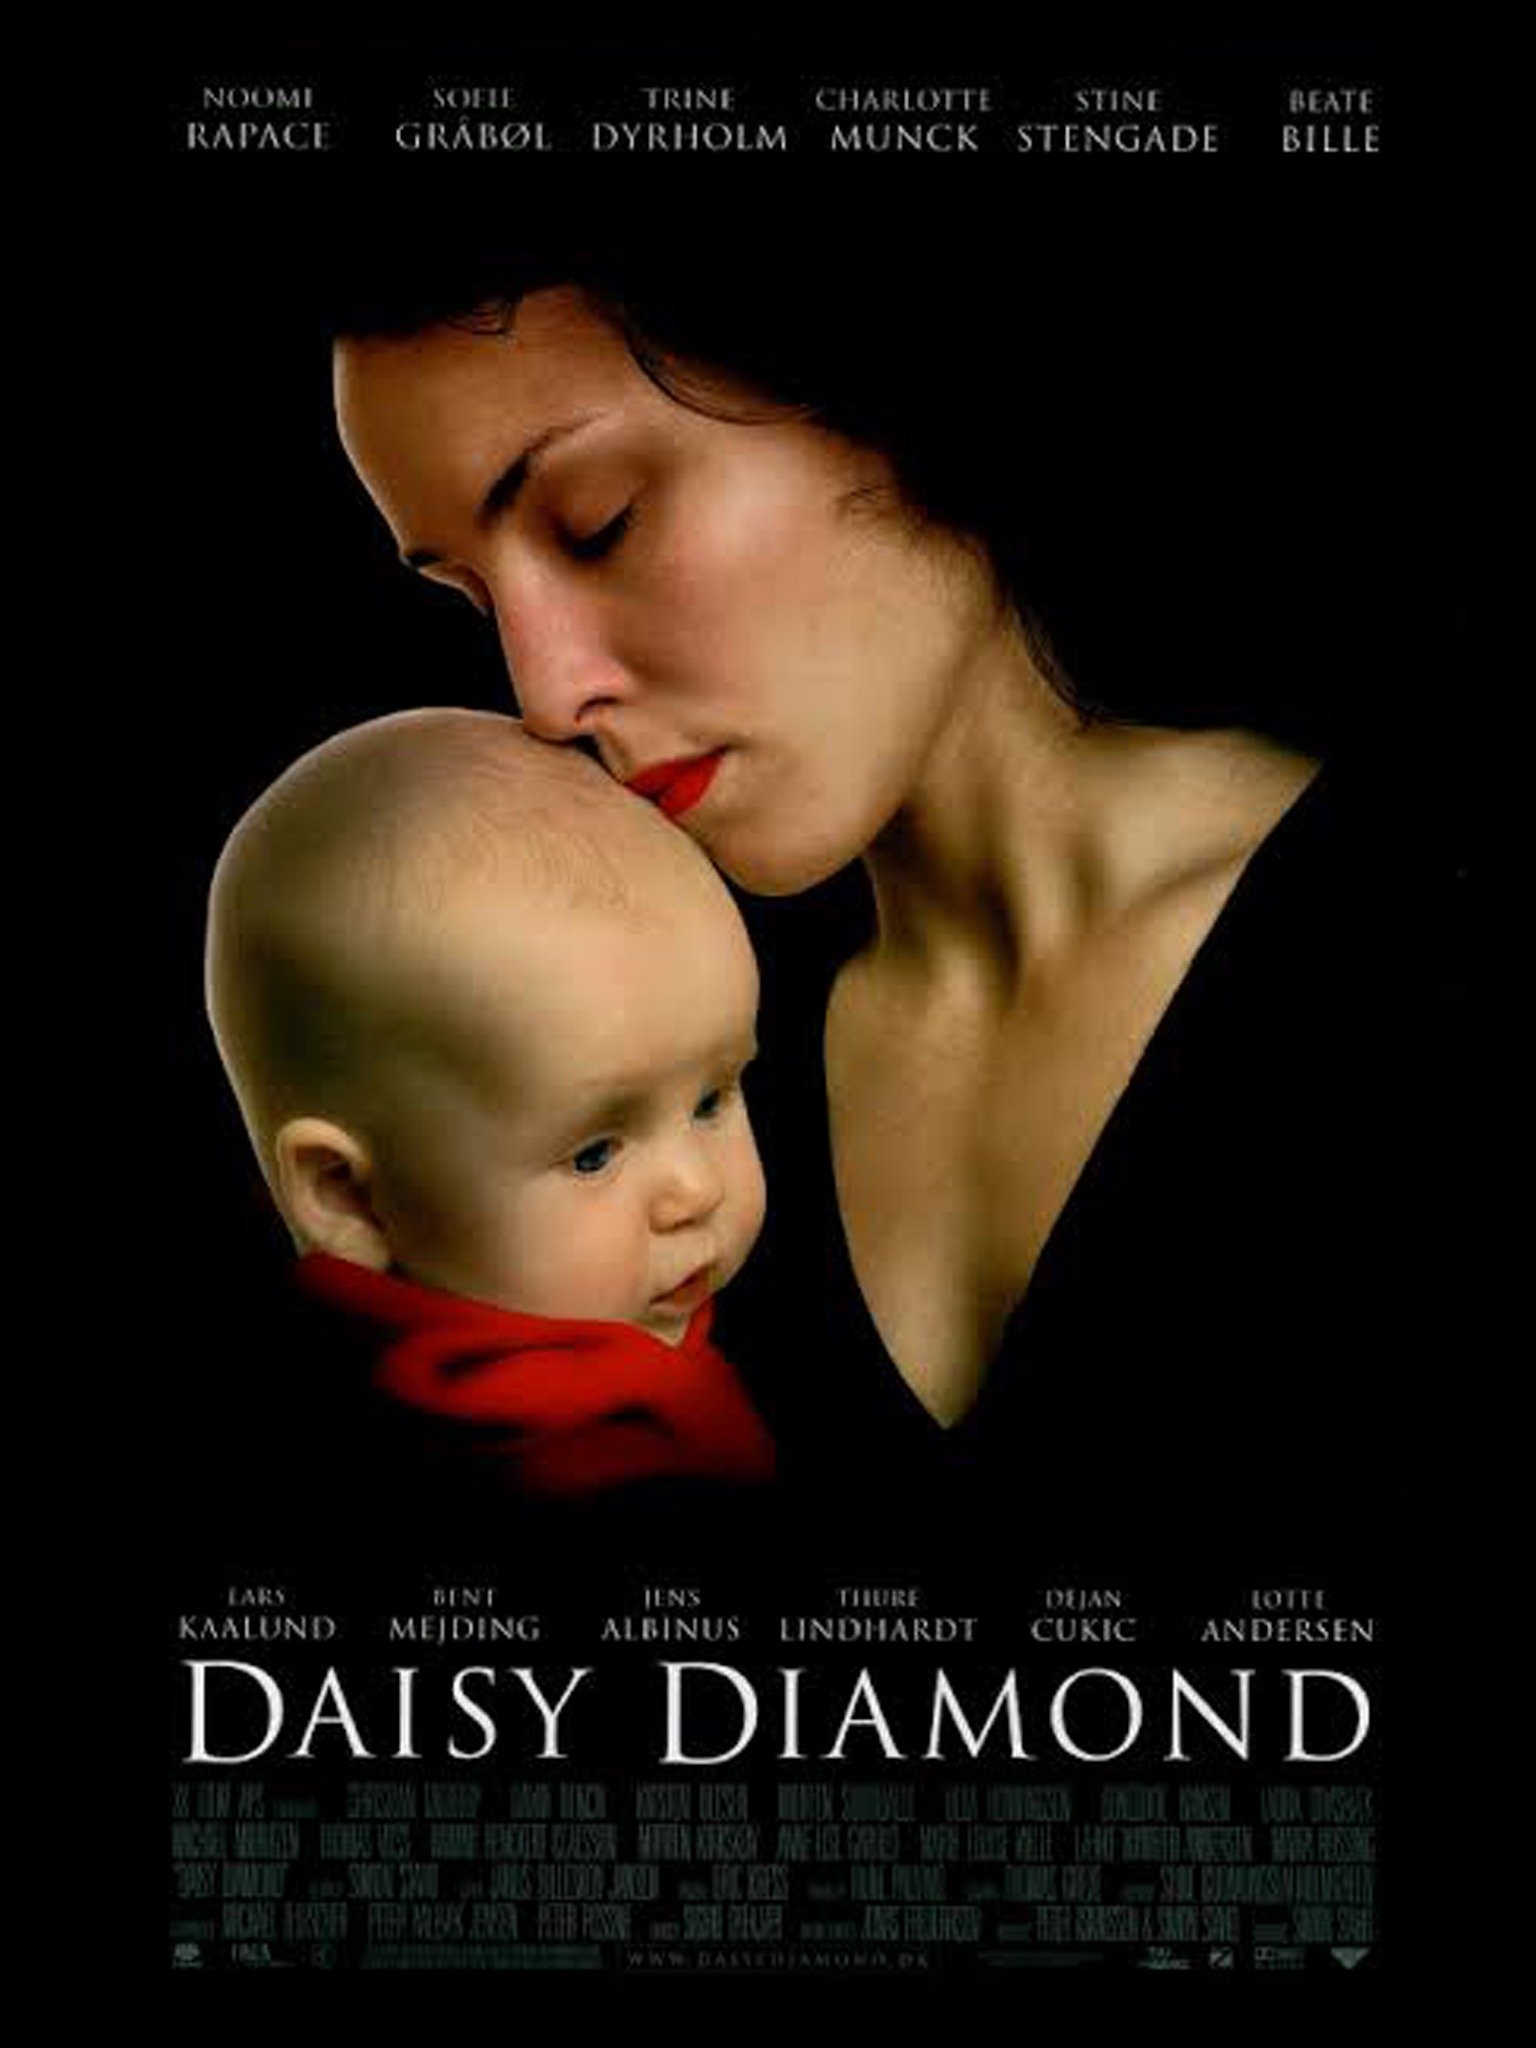 Daisy noomi diamond rapace Daisy Diamond